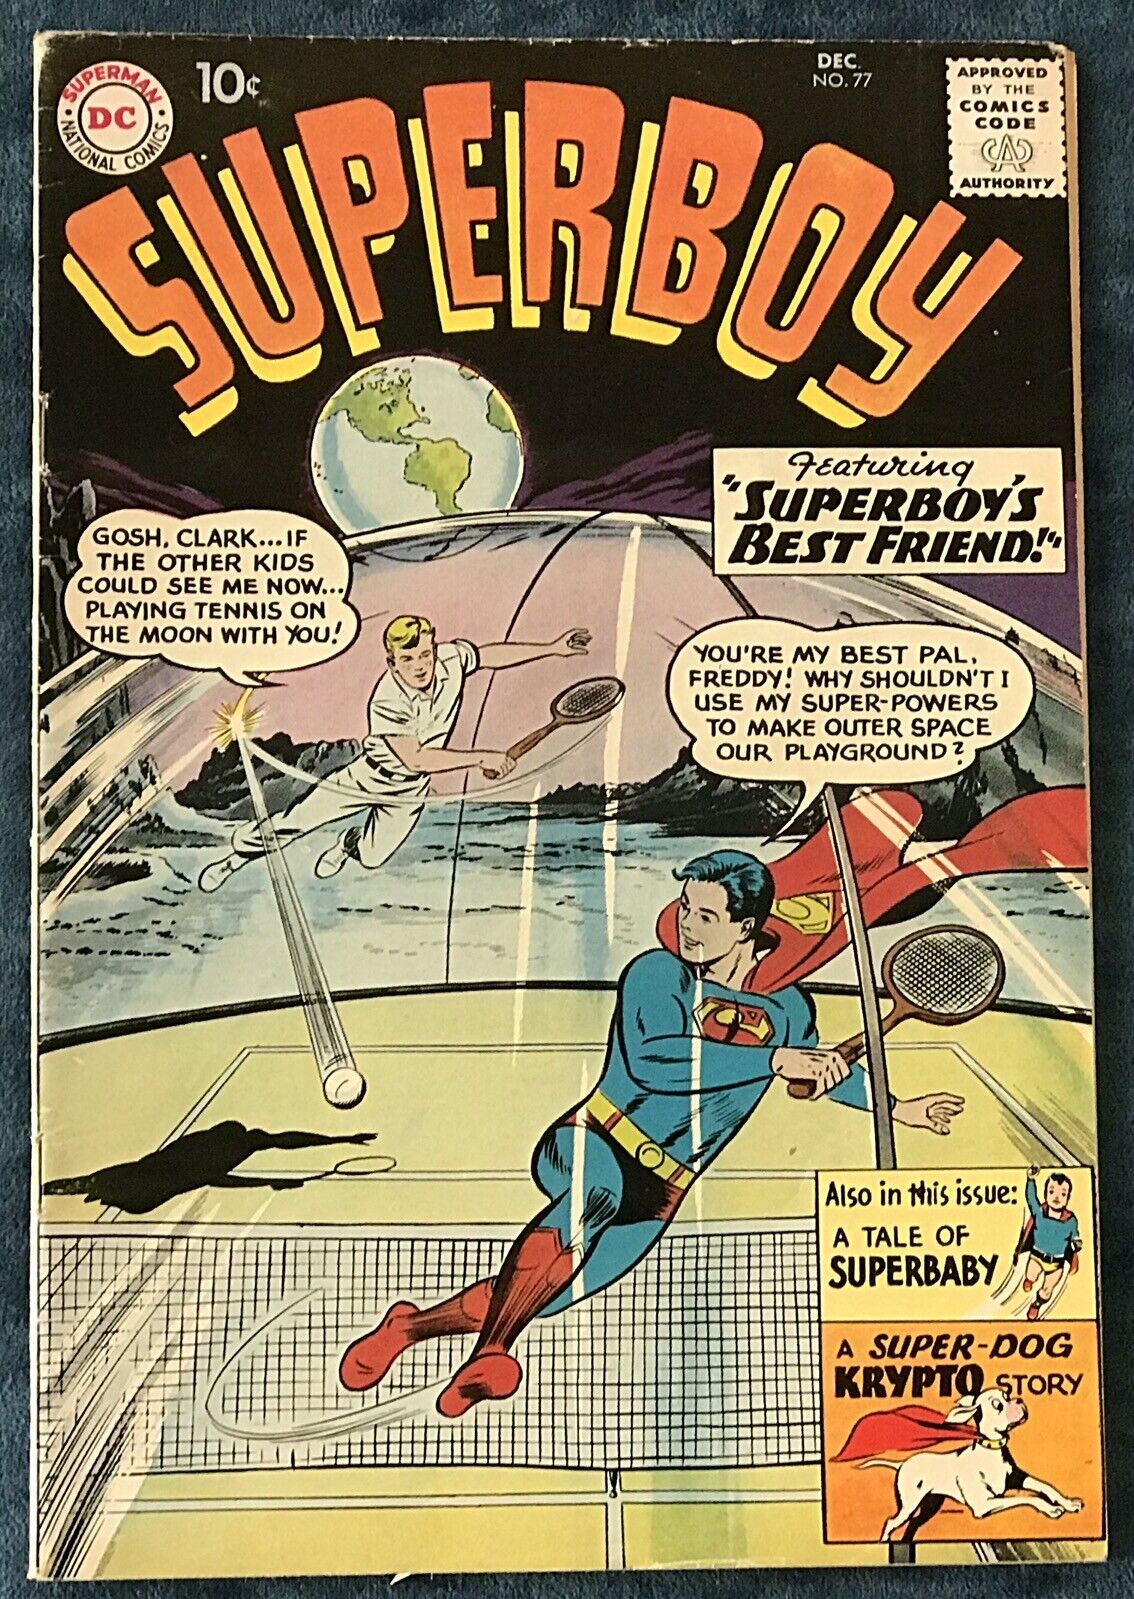 Superboy #77  Dec 1959